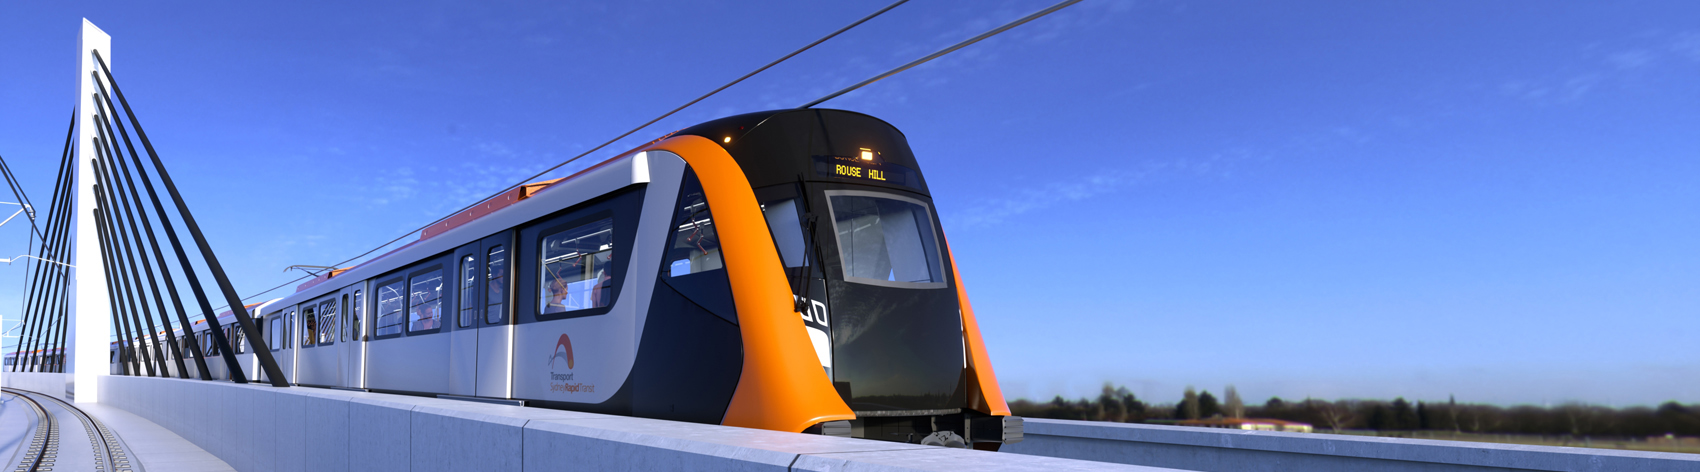 Alstom : un train interurbain automatique pour l’Australie